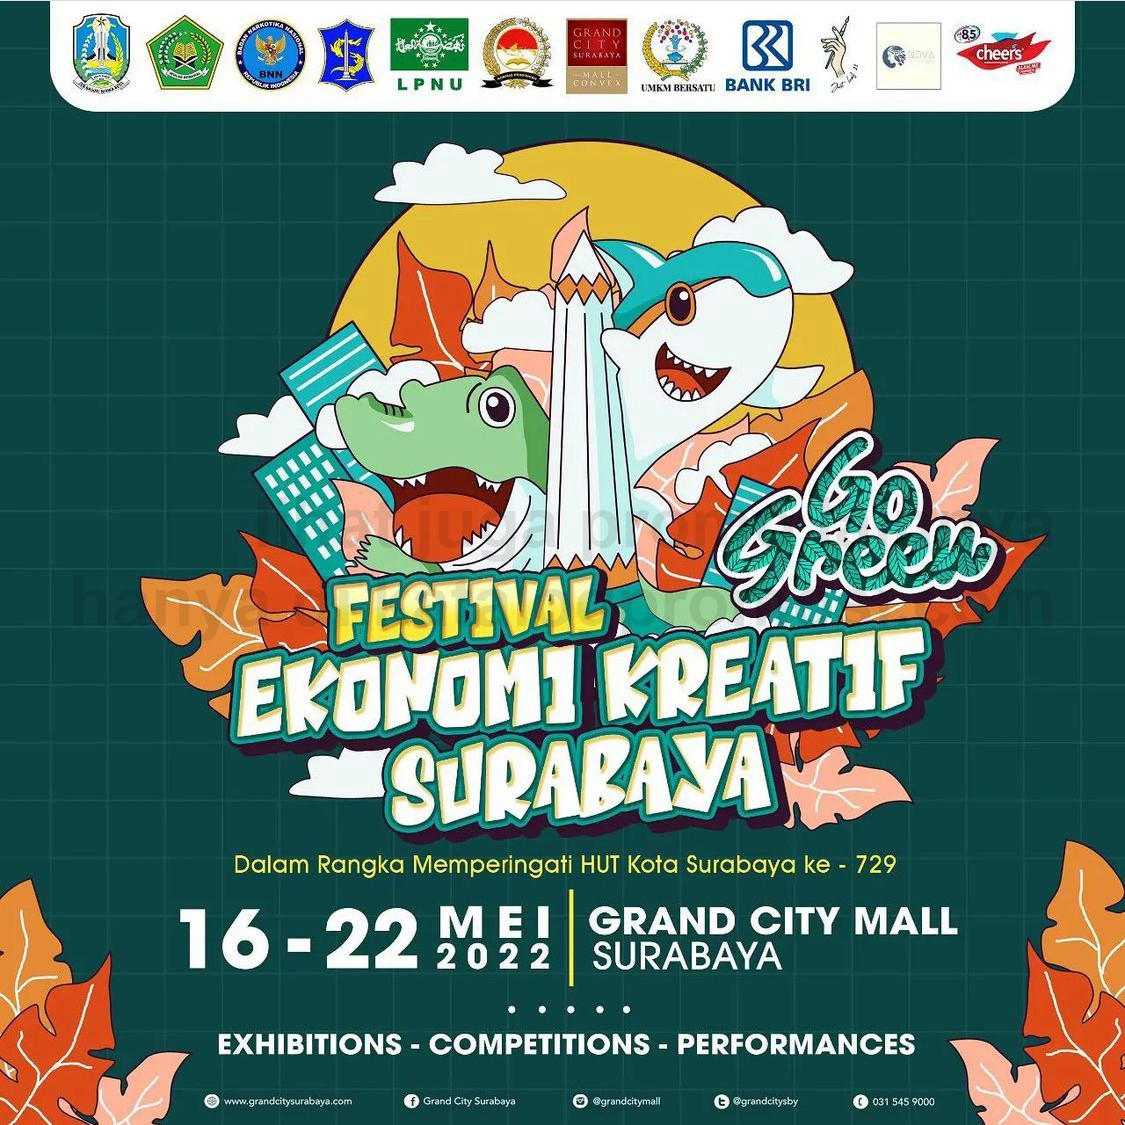 Festival Ekonomi Kreatif Surabaya Go Green 2022 di GRAND CITY MALL SURABAYA